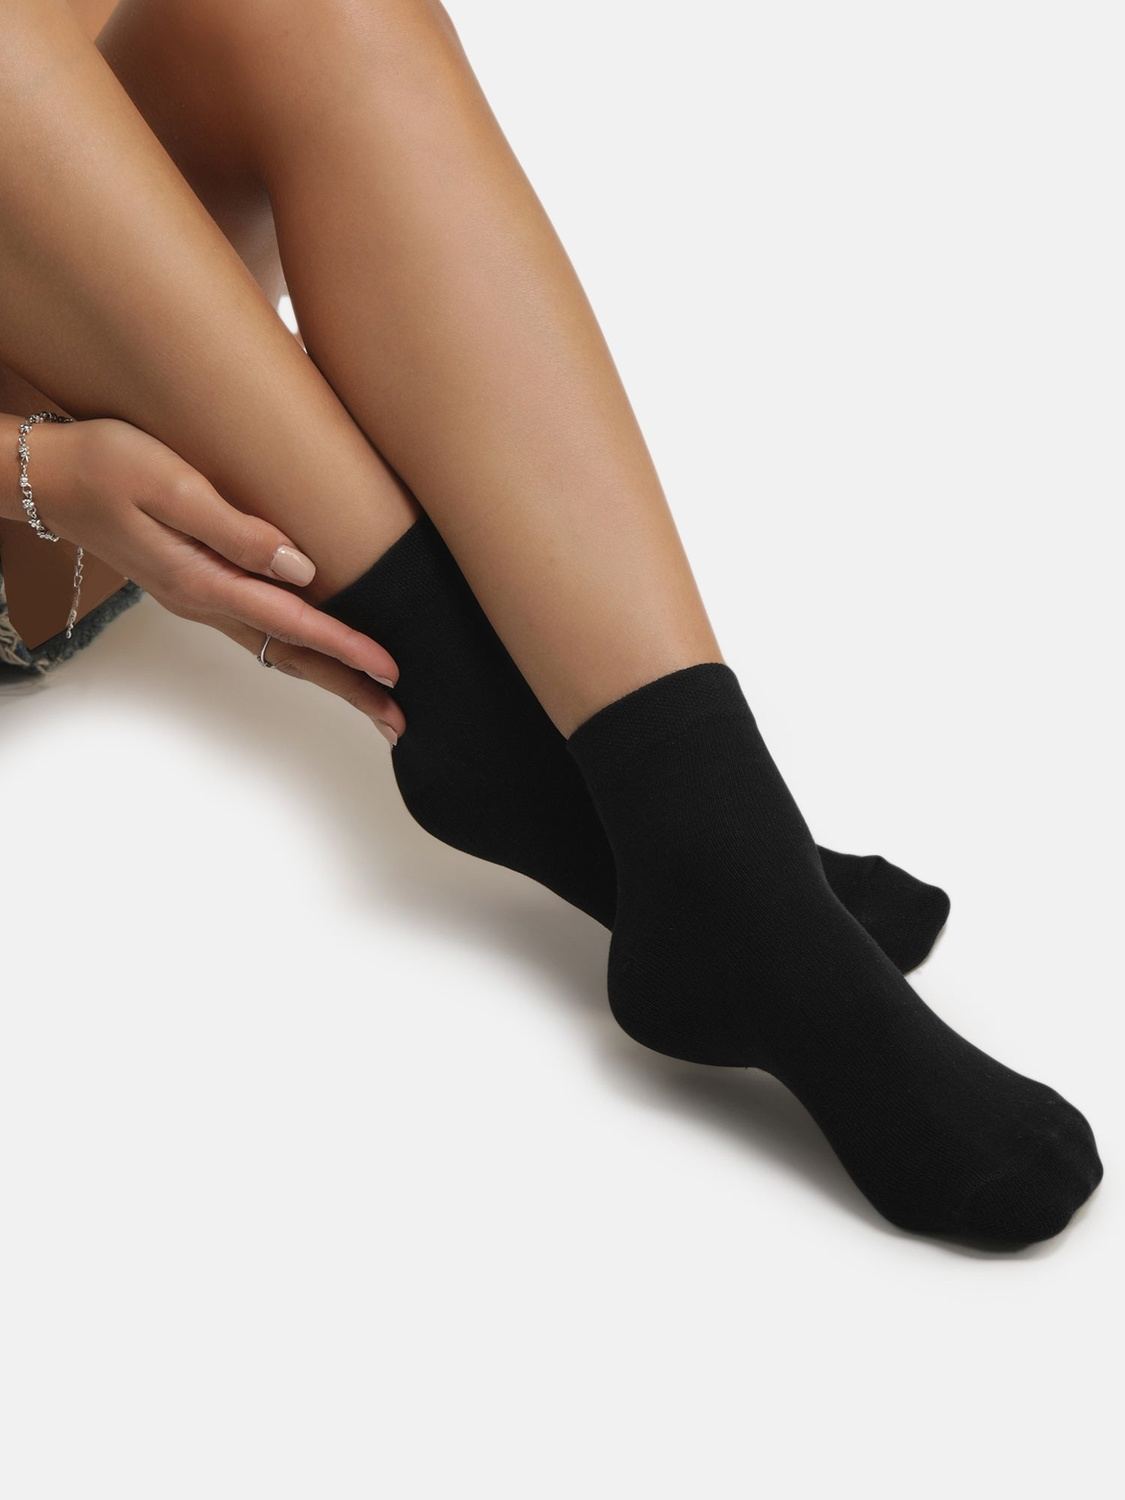 Ankle Length Socks - Black